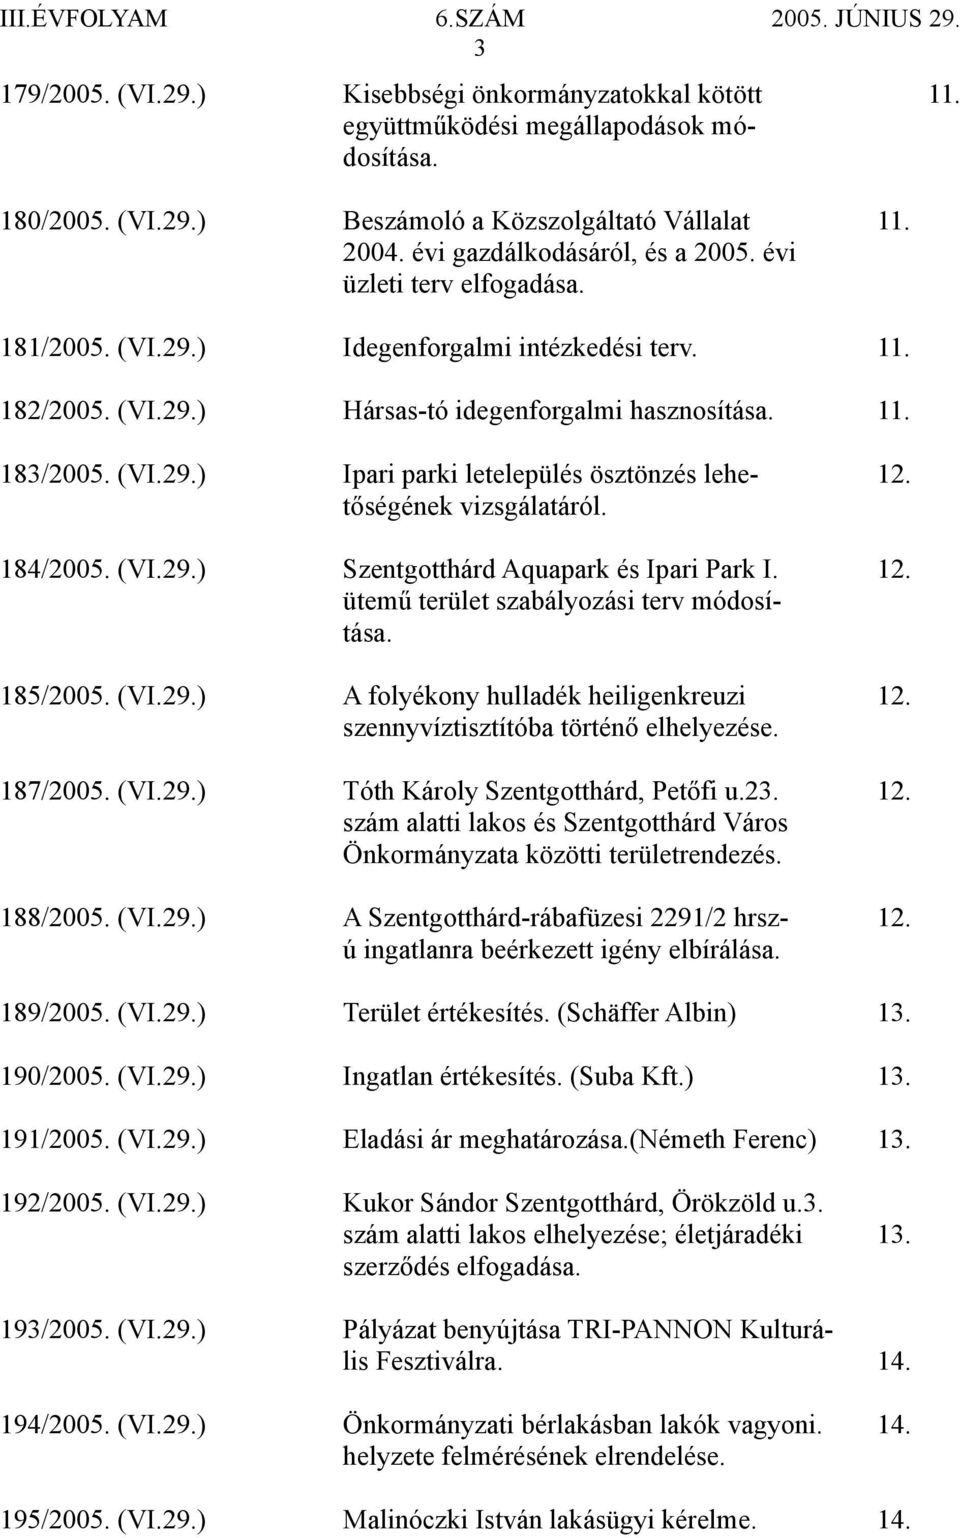 tőségének vizsgálatáról. 184/2005. (VI.29.) Szentgotthárd Aquapark és Ipari Park I. 12. ütemű terület szabályozási terv módosítása. 185/2005. (VI.29.) A folyékony hulladék heiligenkreuzi 12.